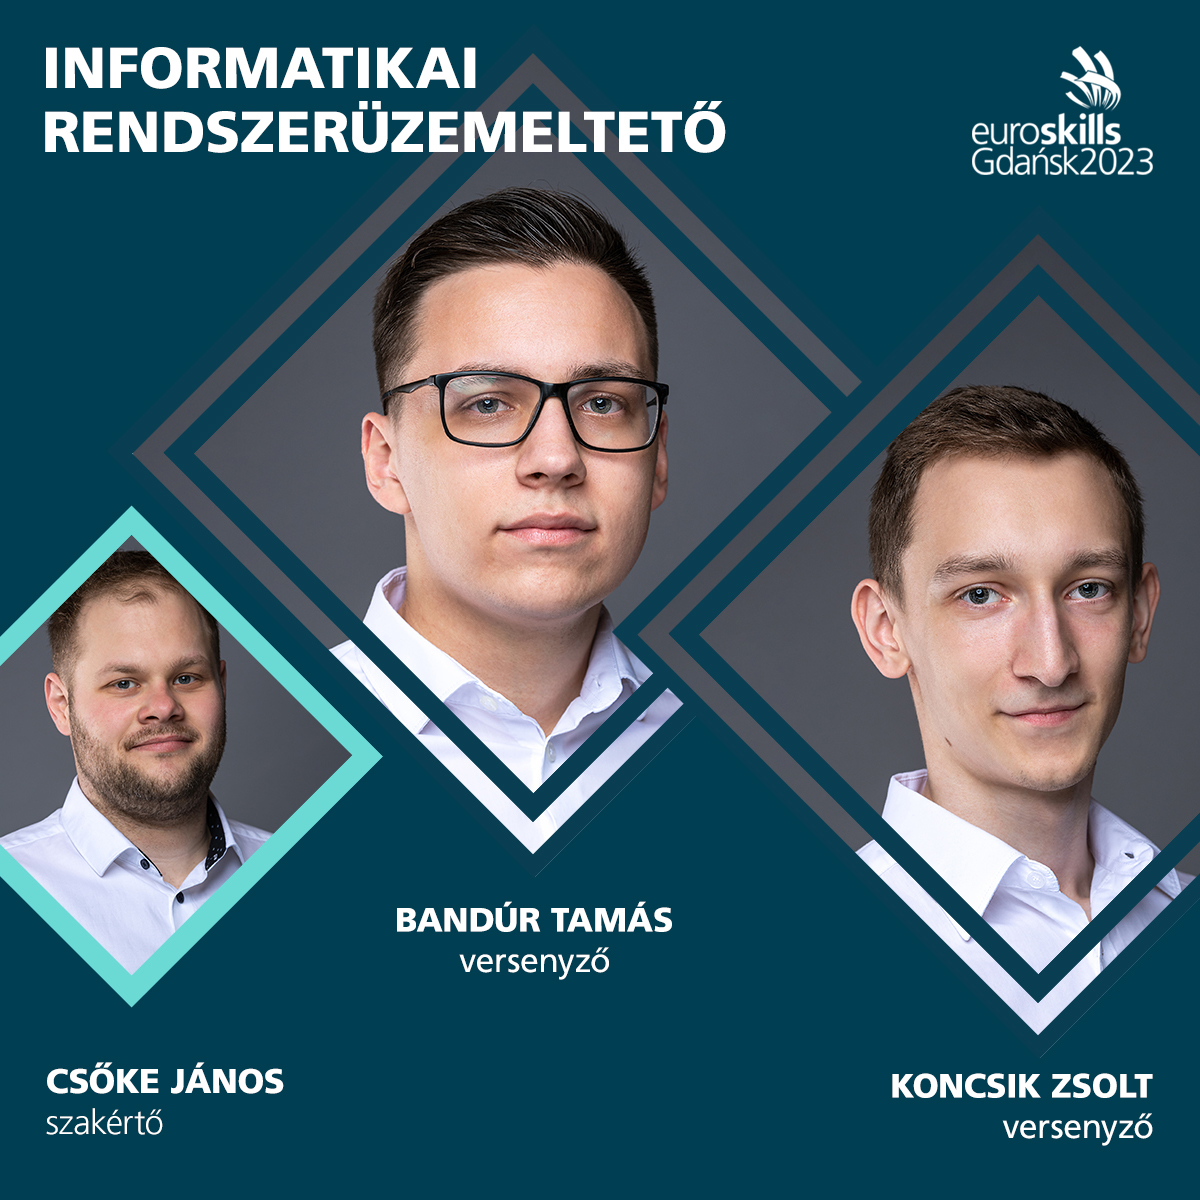 Bandúr Tamás, Koncsik Zsolt és Csőke János - informatikai rendszerüzemeltető kategória